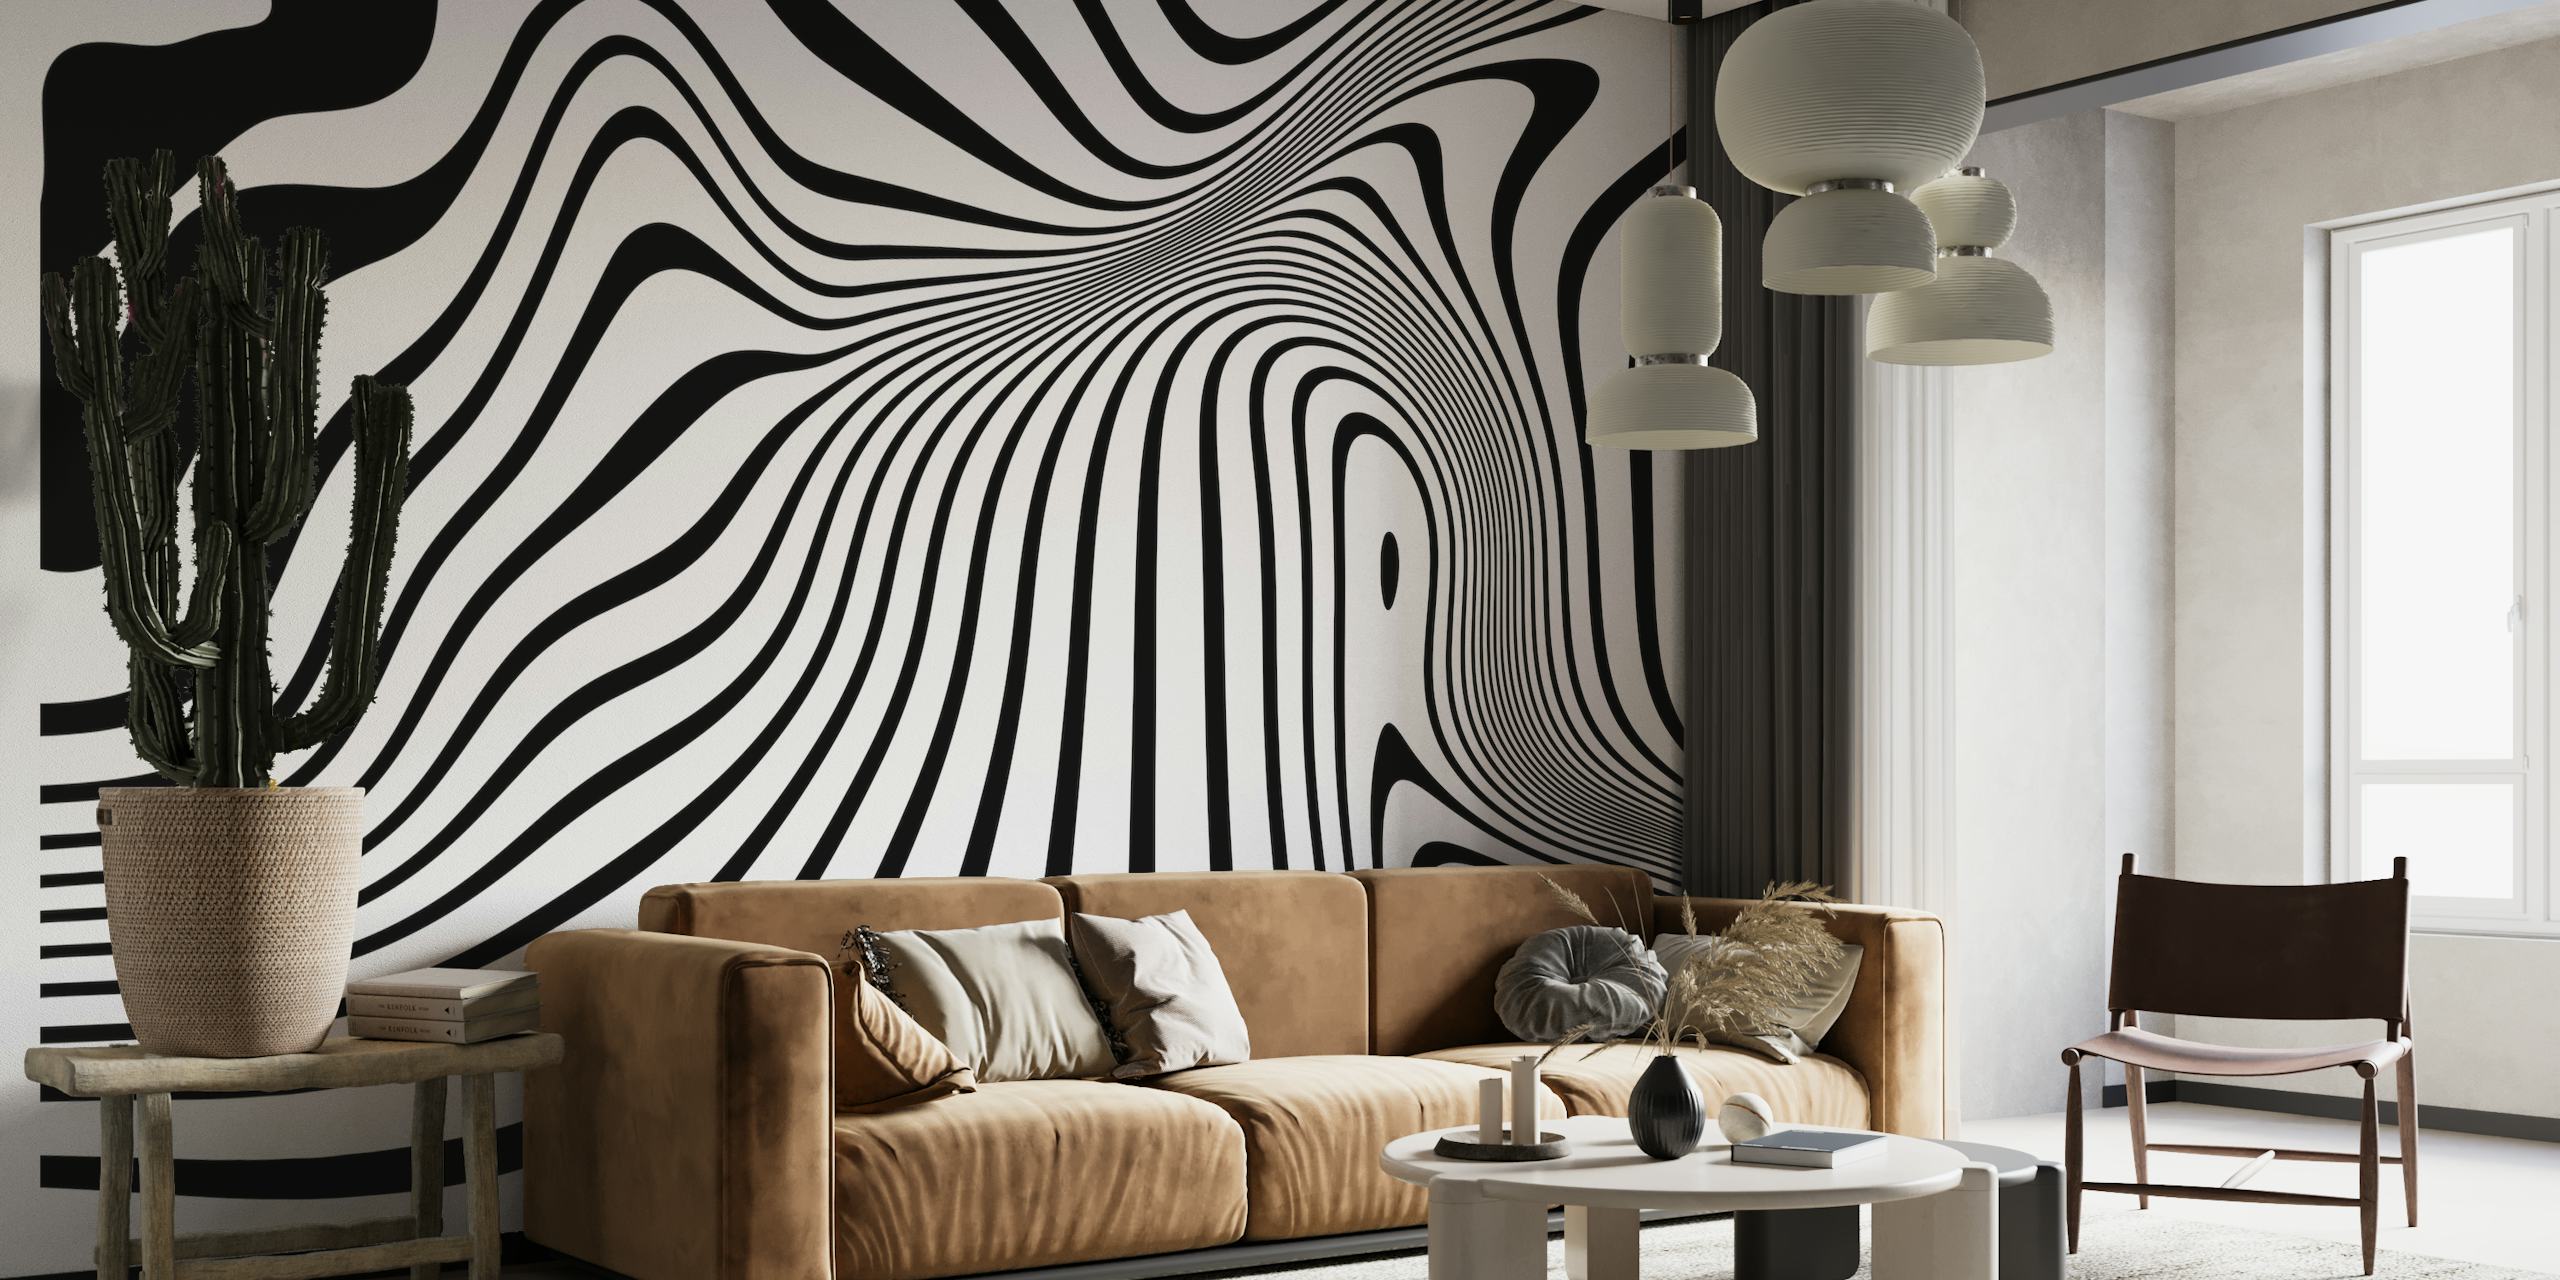 Crno-bijeli zidni mural apstraktne linije s tekućim, organskim oblicima koji stvaraju dinamičnu vizualnu teksturu